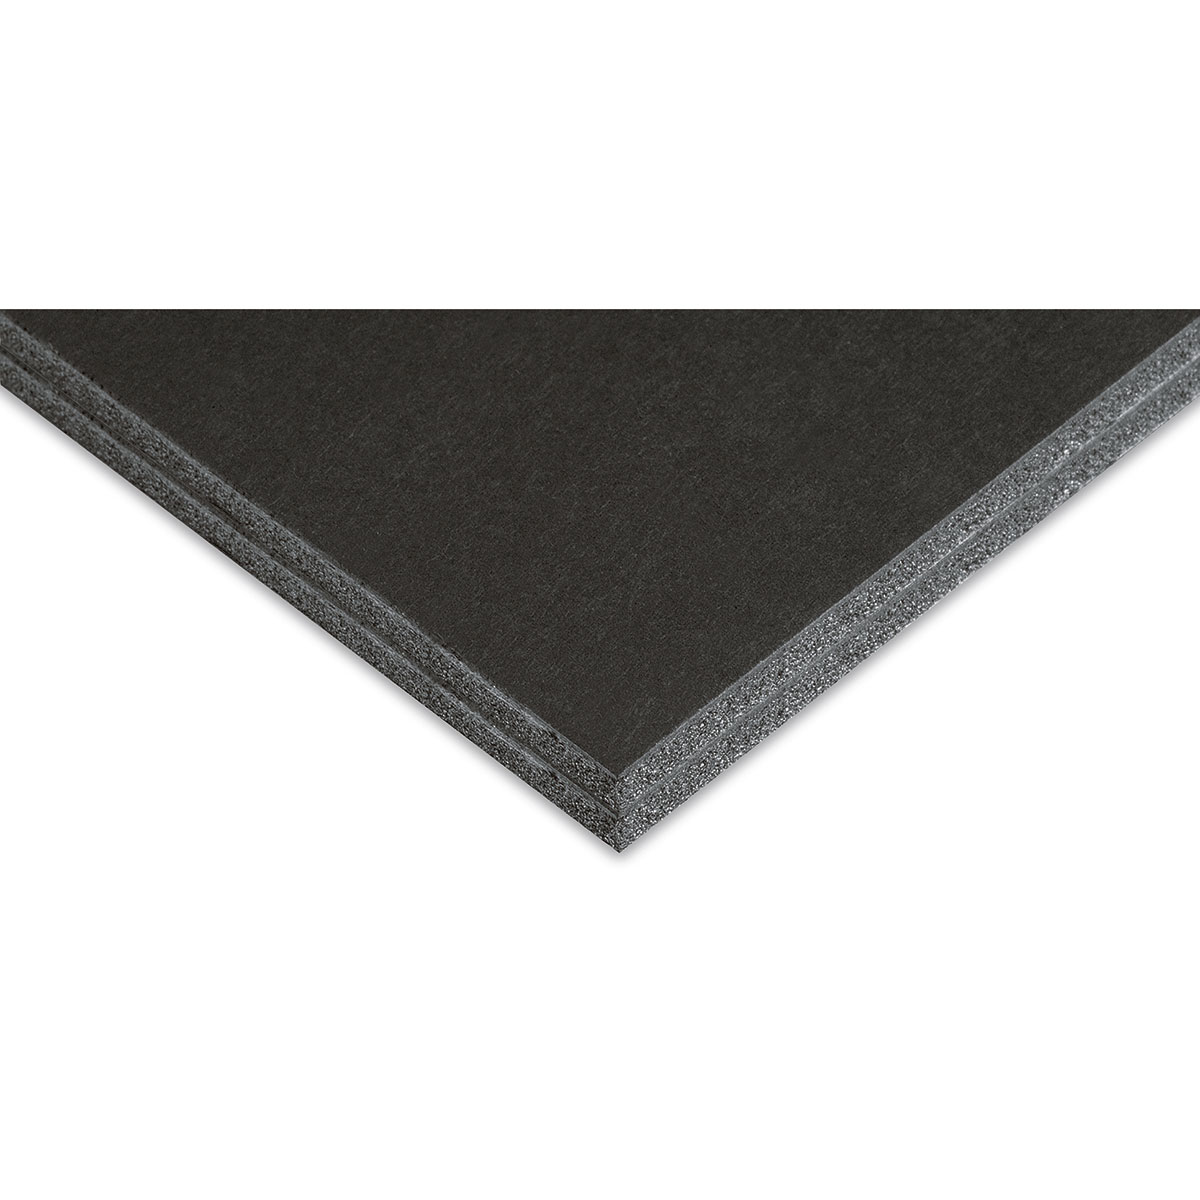 Elmer's Black-on-Black Foam Board, 24x36